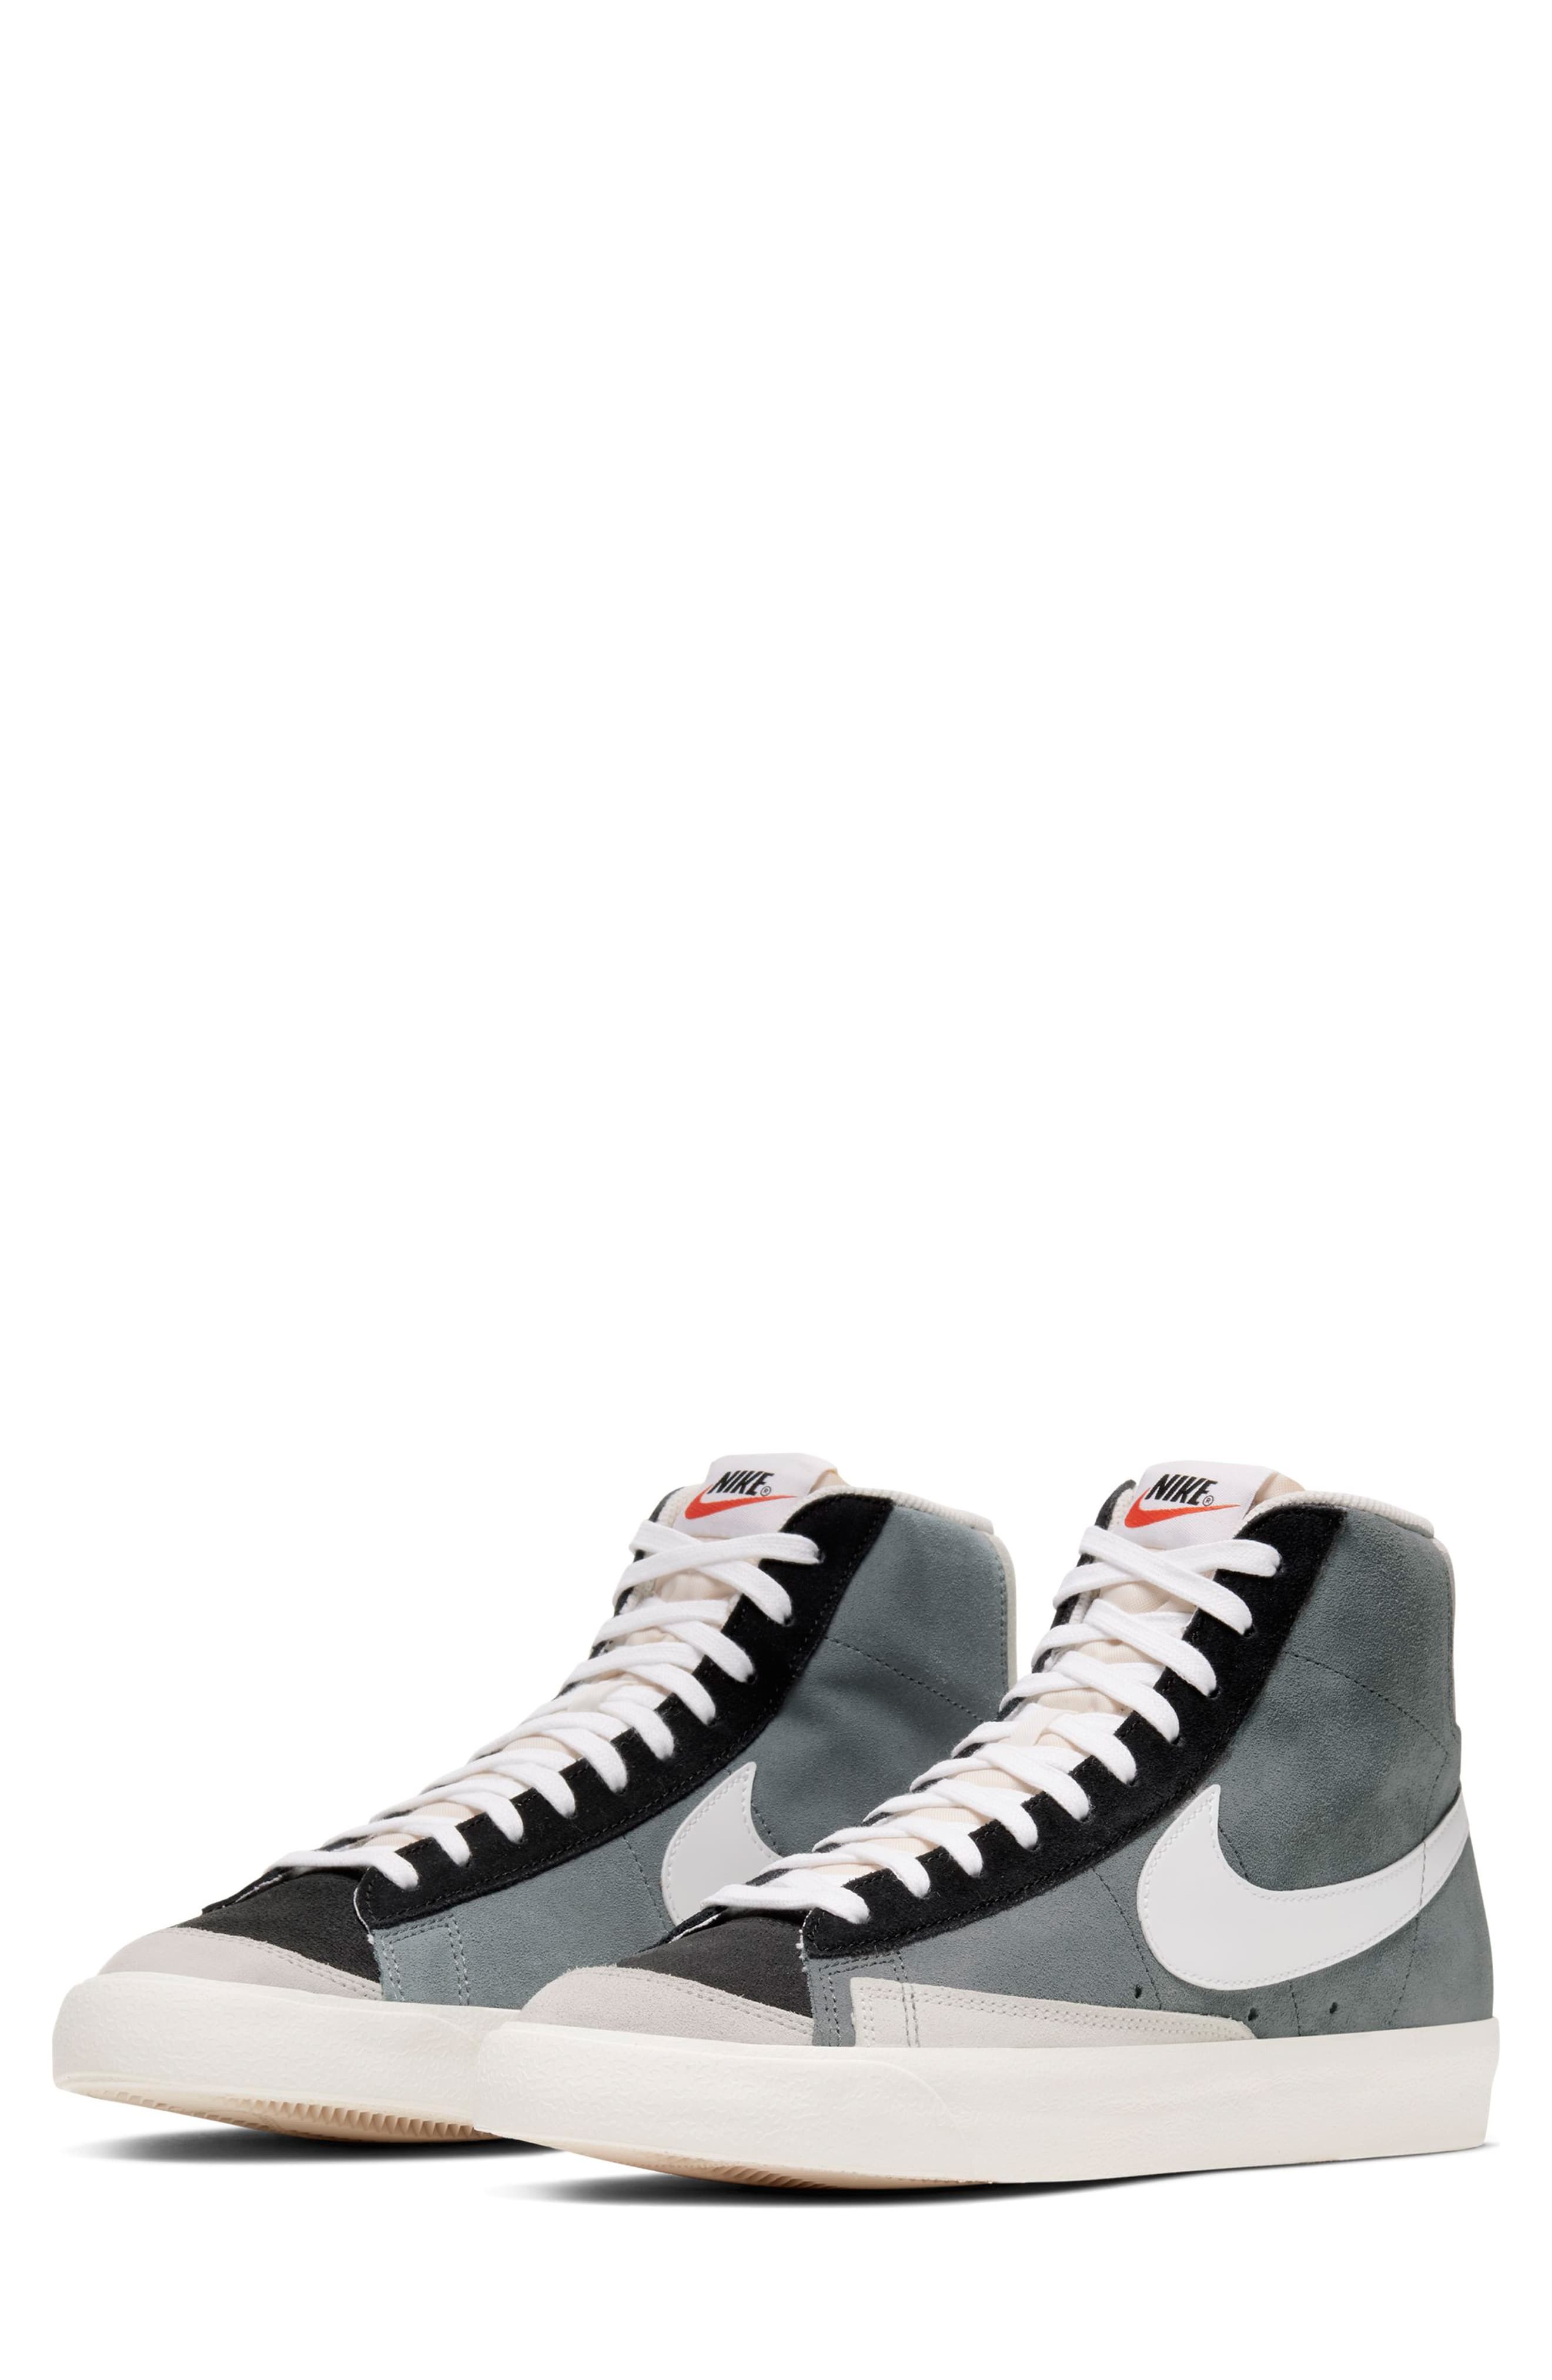 Nike Blazer Mid 77 Vintage We Suede Sneaker, $100 | Nordstrom ...